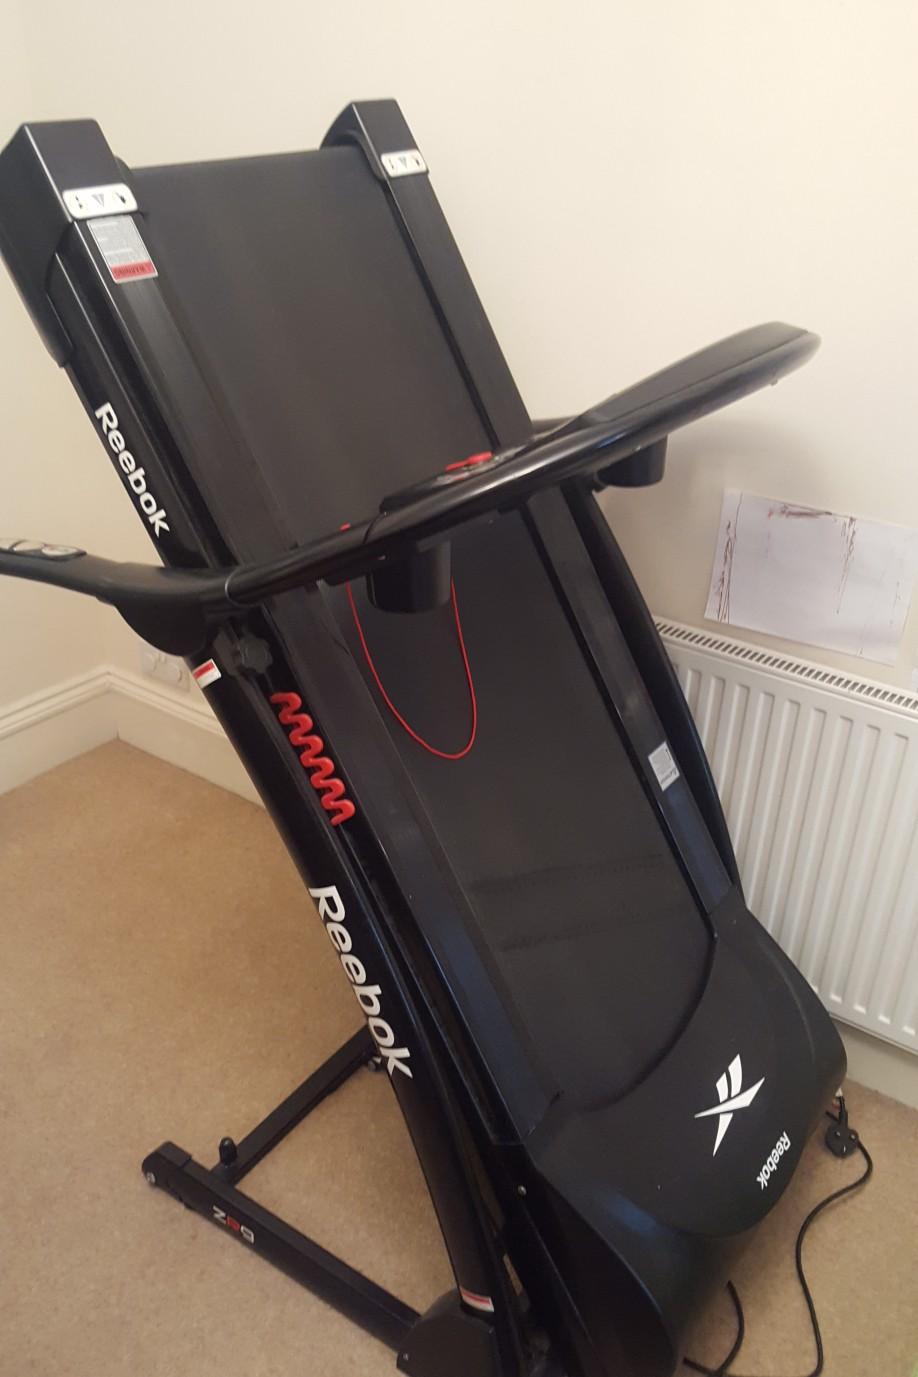 Reebok ZR9 Treadmill for sale in SW19 